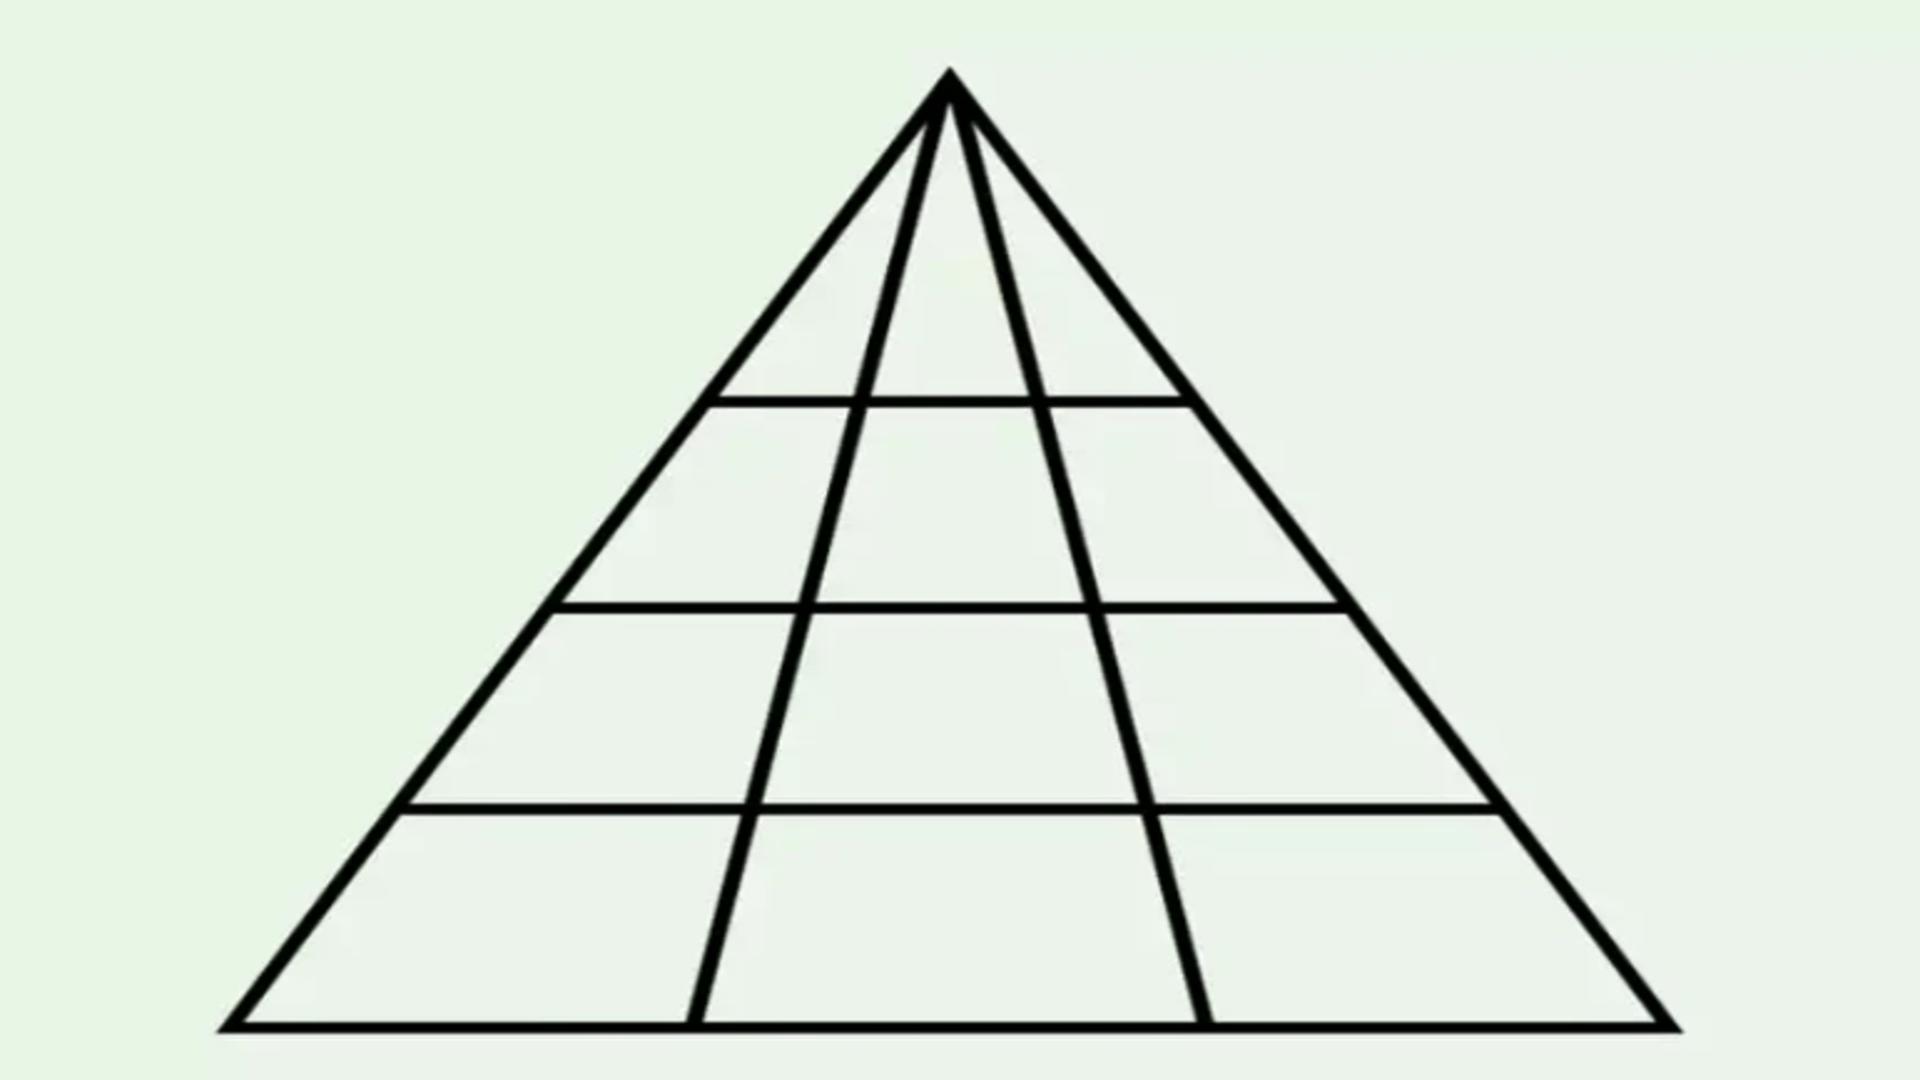 Testul de inteligență cu dificultate sporită. Câte triunghiuri vezi în imagine? Peste 70% răspund greșit